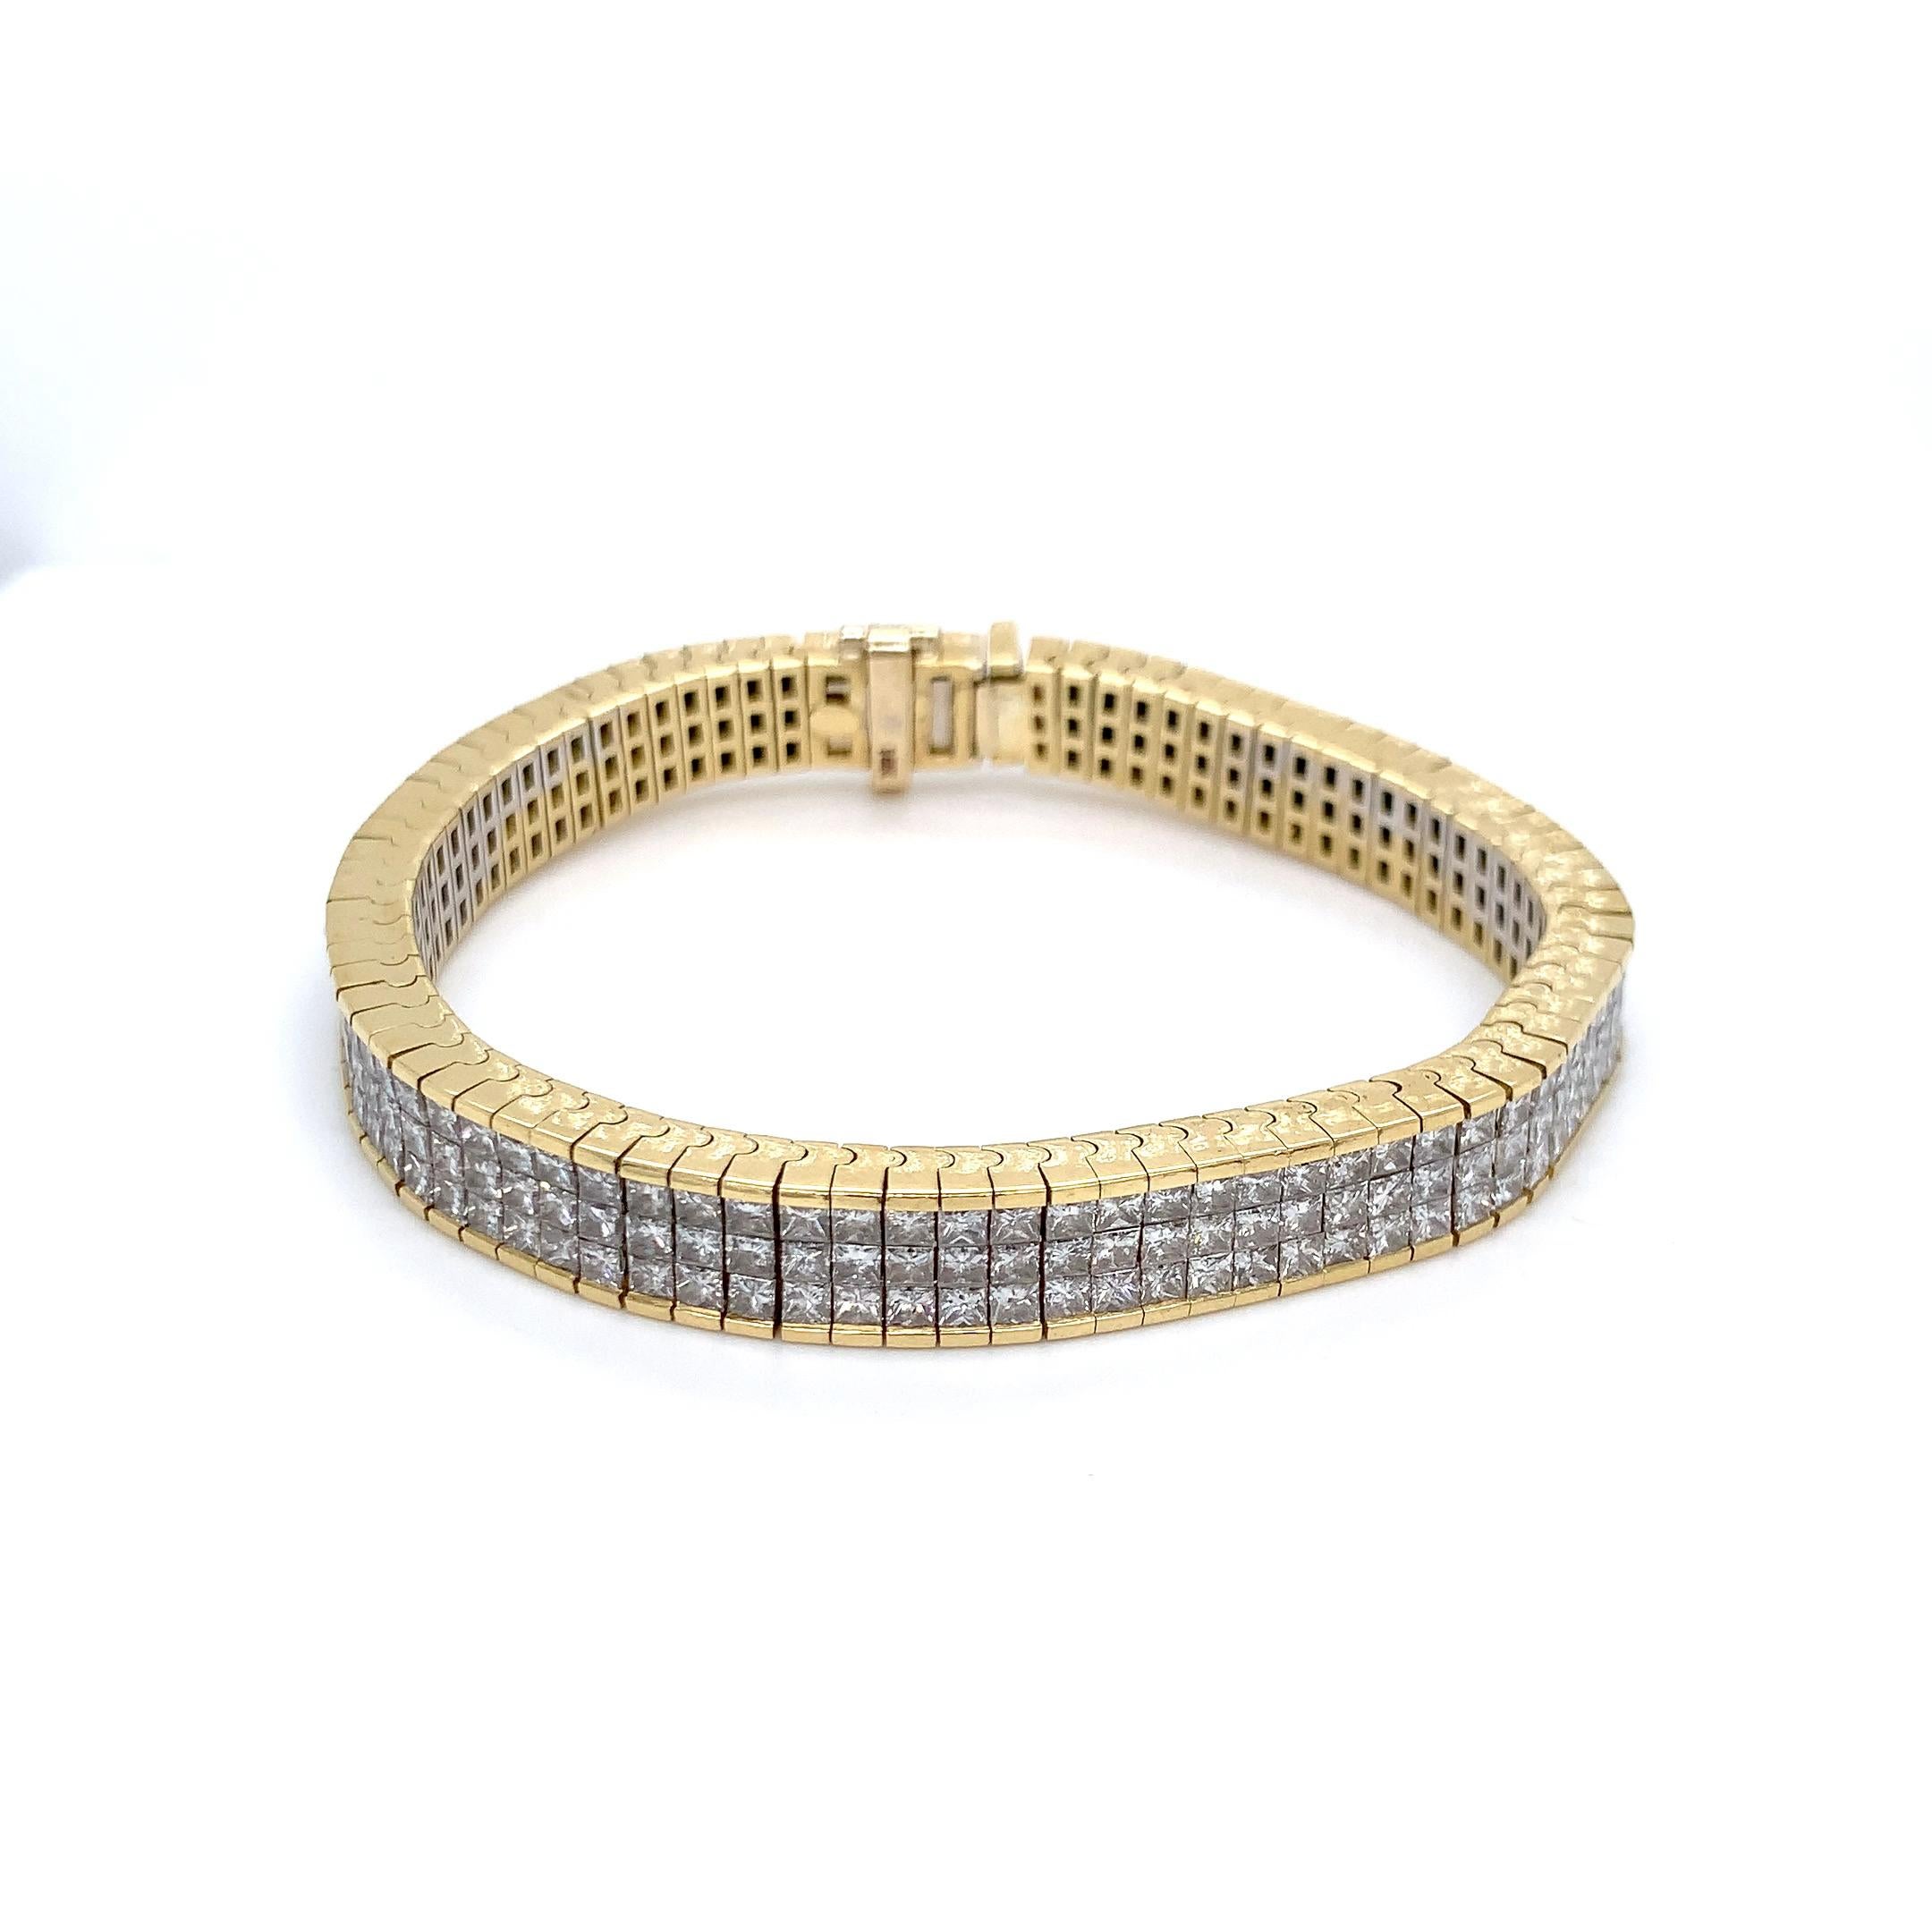 Ce magnifique bracelet a été réalisé dans les années 1980 par un bijoutier sur mesure. Il comporte 249 diamants de taille princesse. Les diamants sont de pureté VS2-SI1, de couleur G-H et de très bonne taille. Le poids total en carats est estimé à